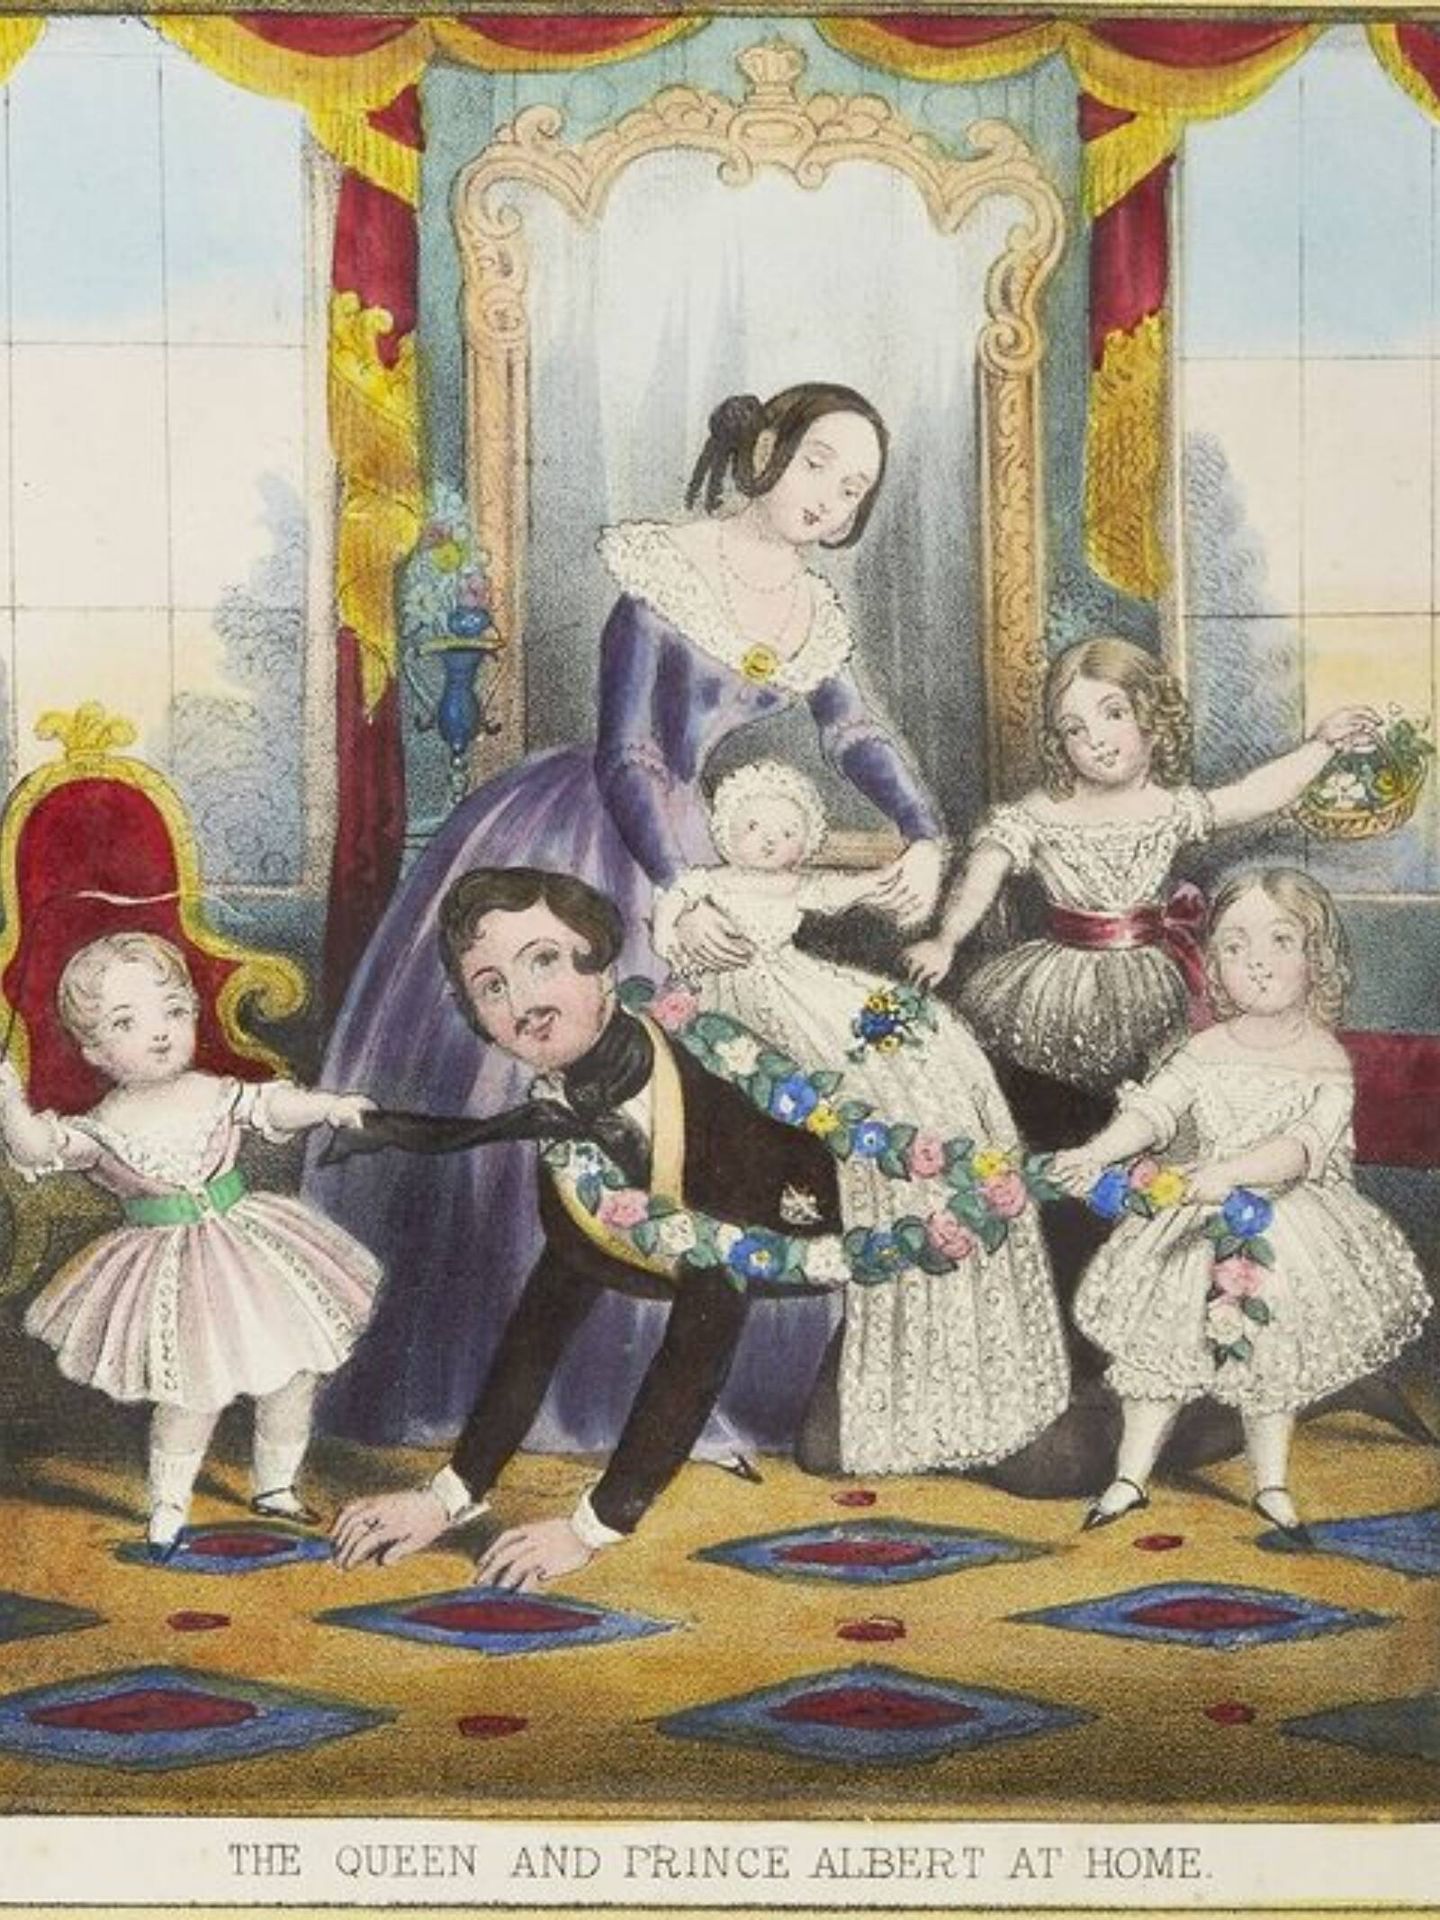 Una postal navideña donde se ilustraban los juegos y manualidades que realizaban la reina Victoria y su familia. (Museo Historic Royal Palaces)